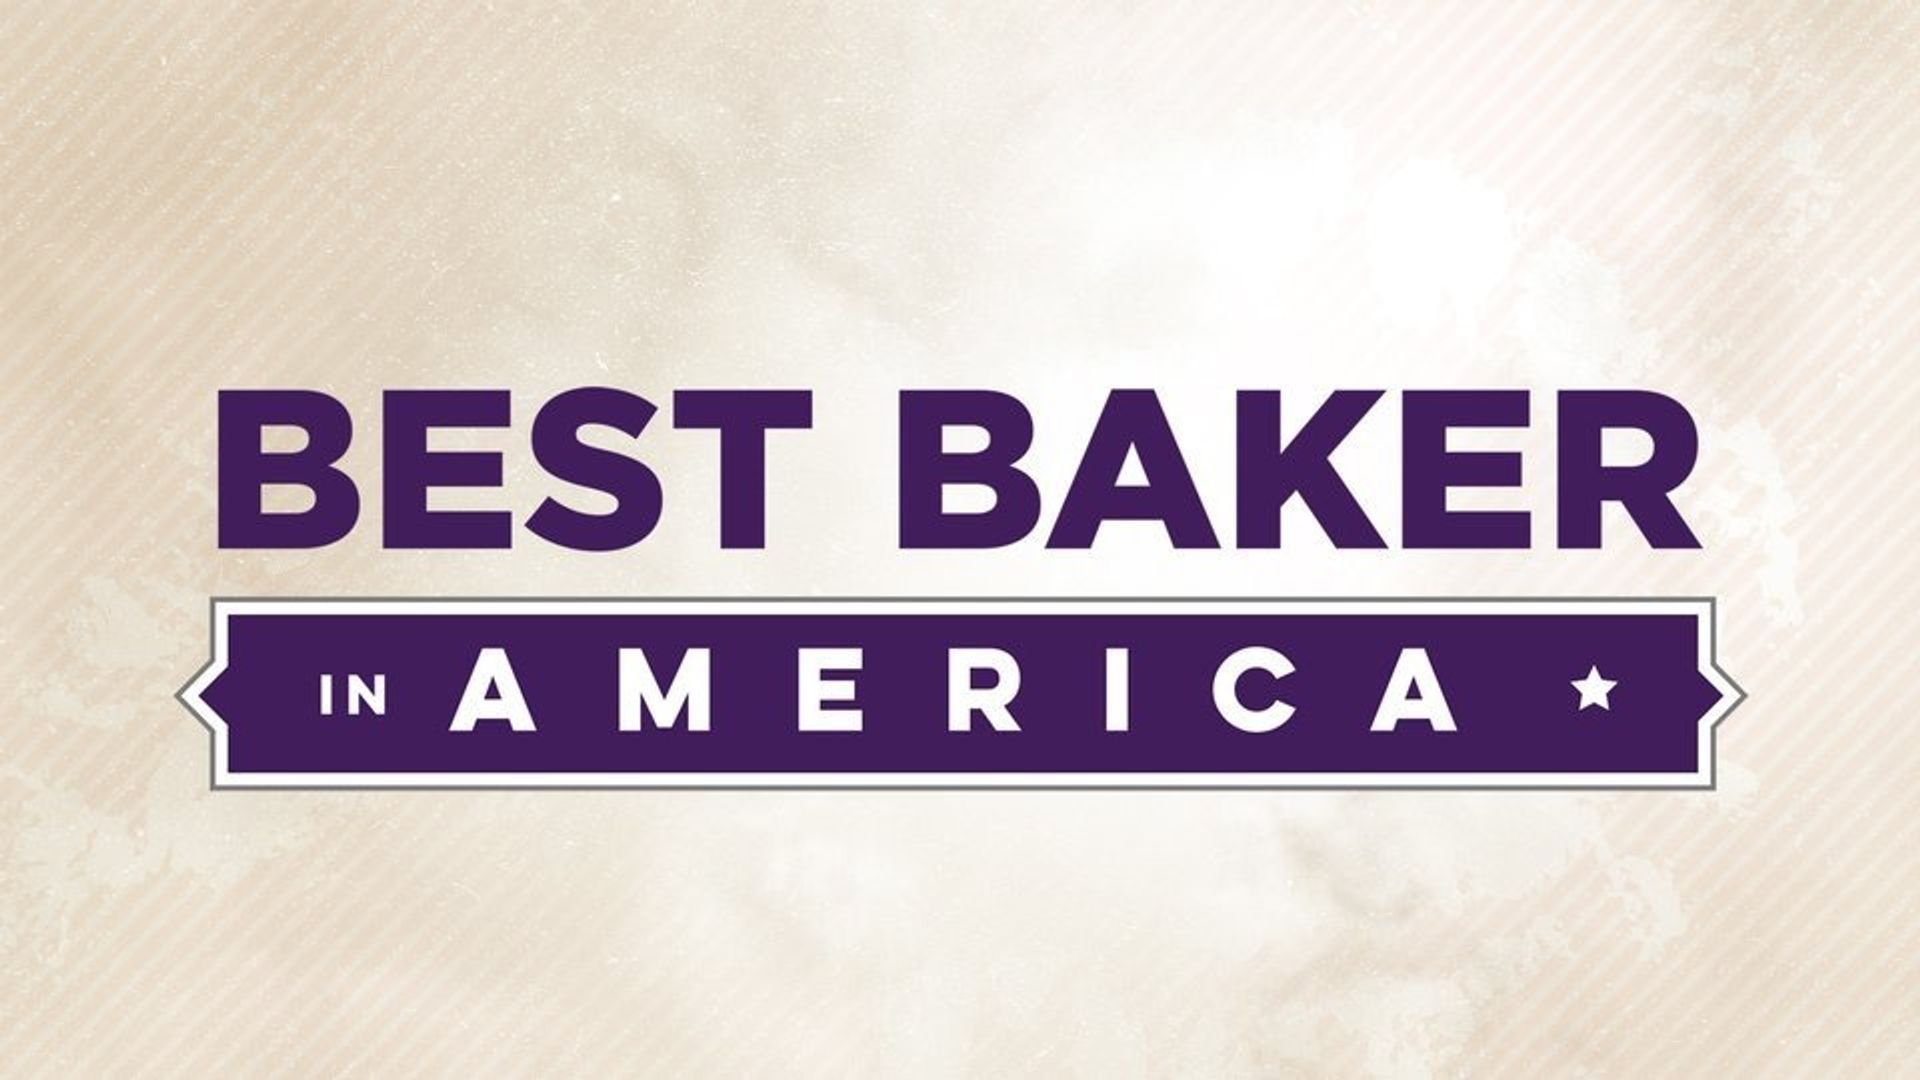 Best Baker in America Backdrop